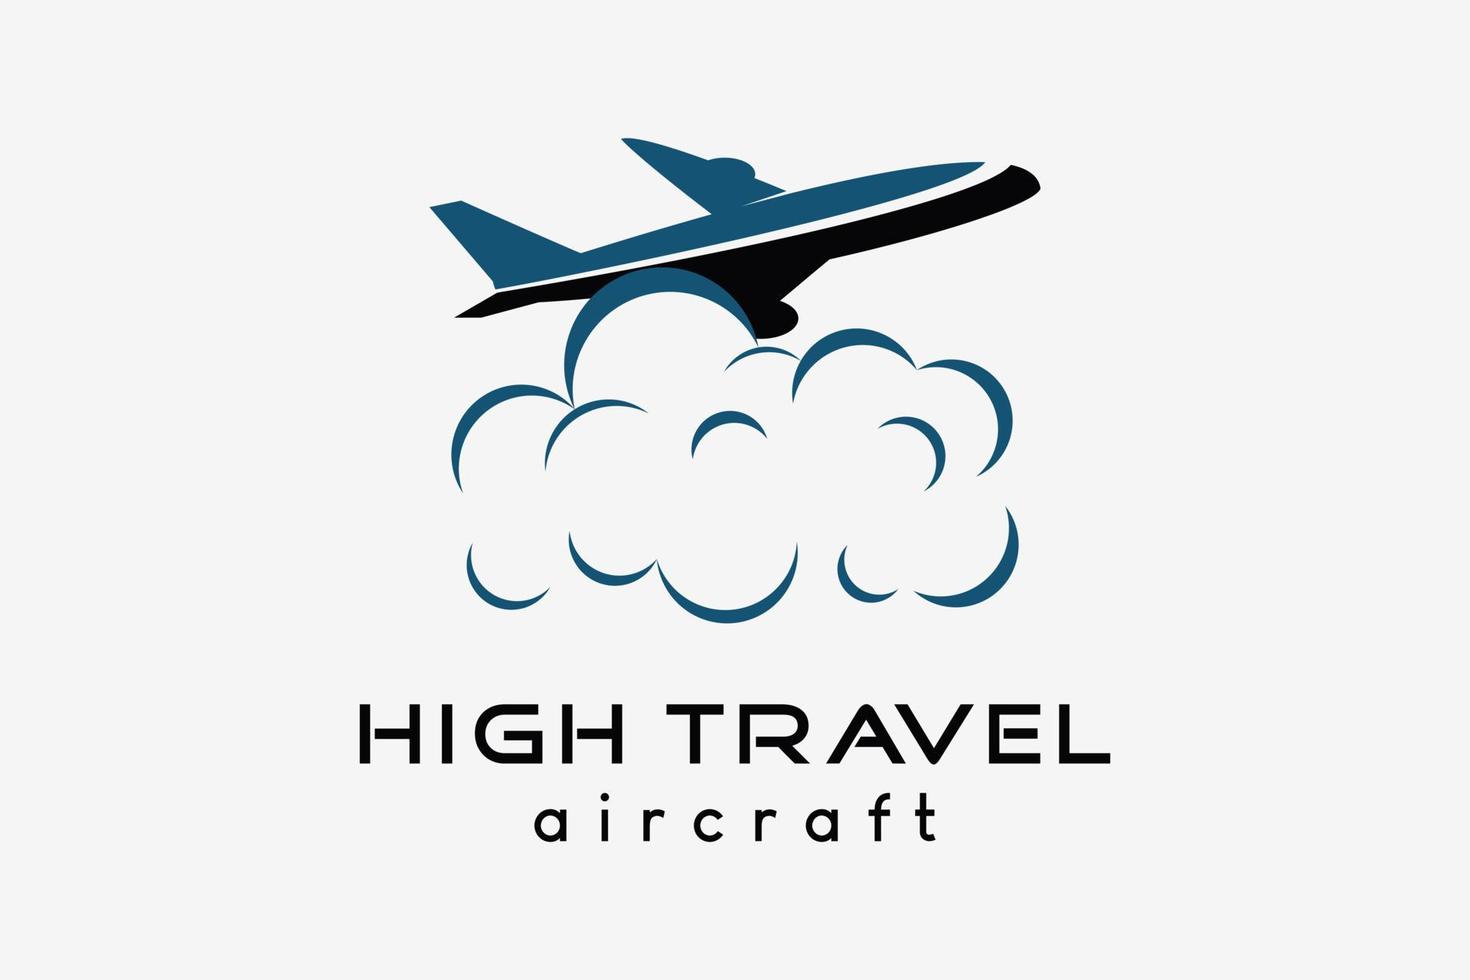 Flugzeug-Logo-Design, Tourismus-Geschäftsreise-Vektor-Illustration. Flugzeugsymbol mit Wolkensymbol im kreativen Konzept vektor